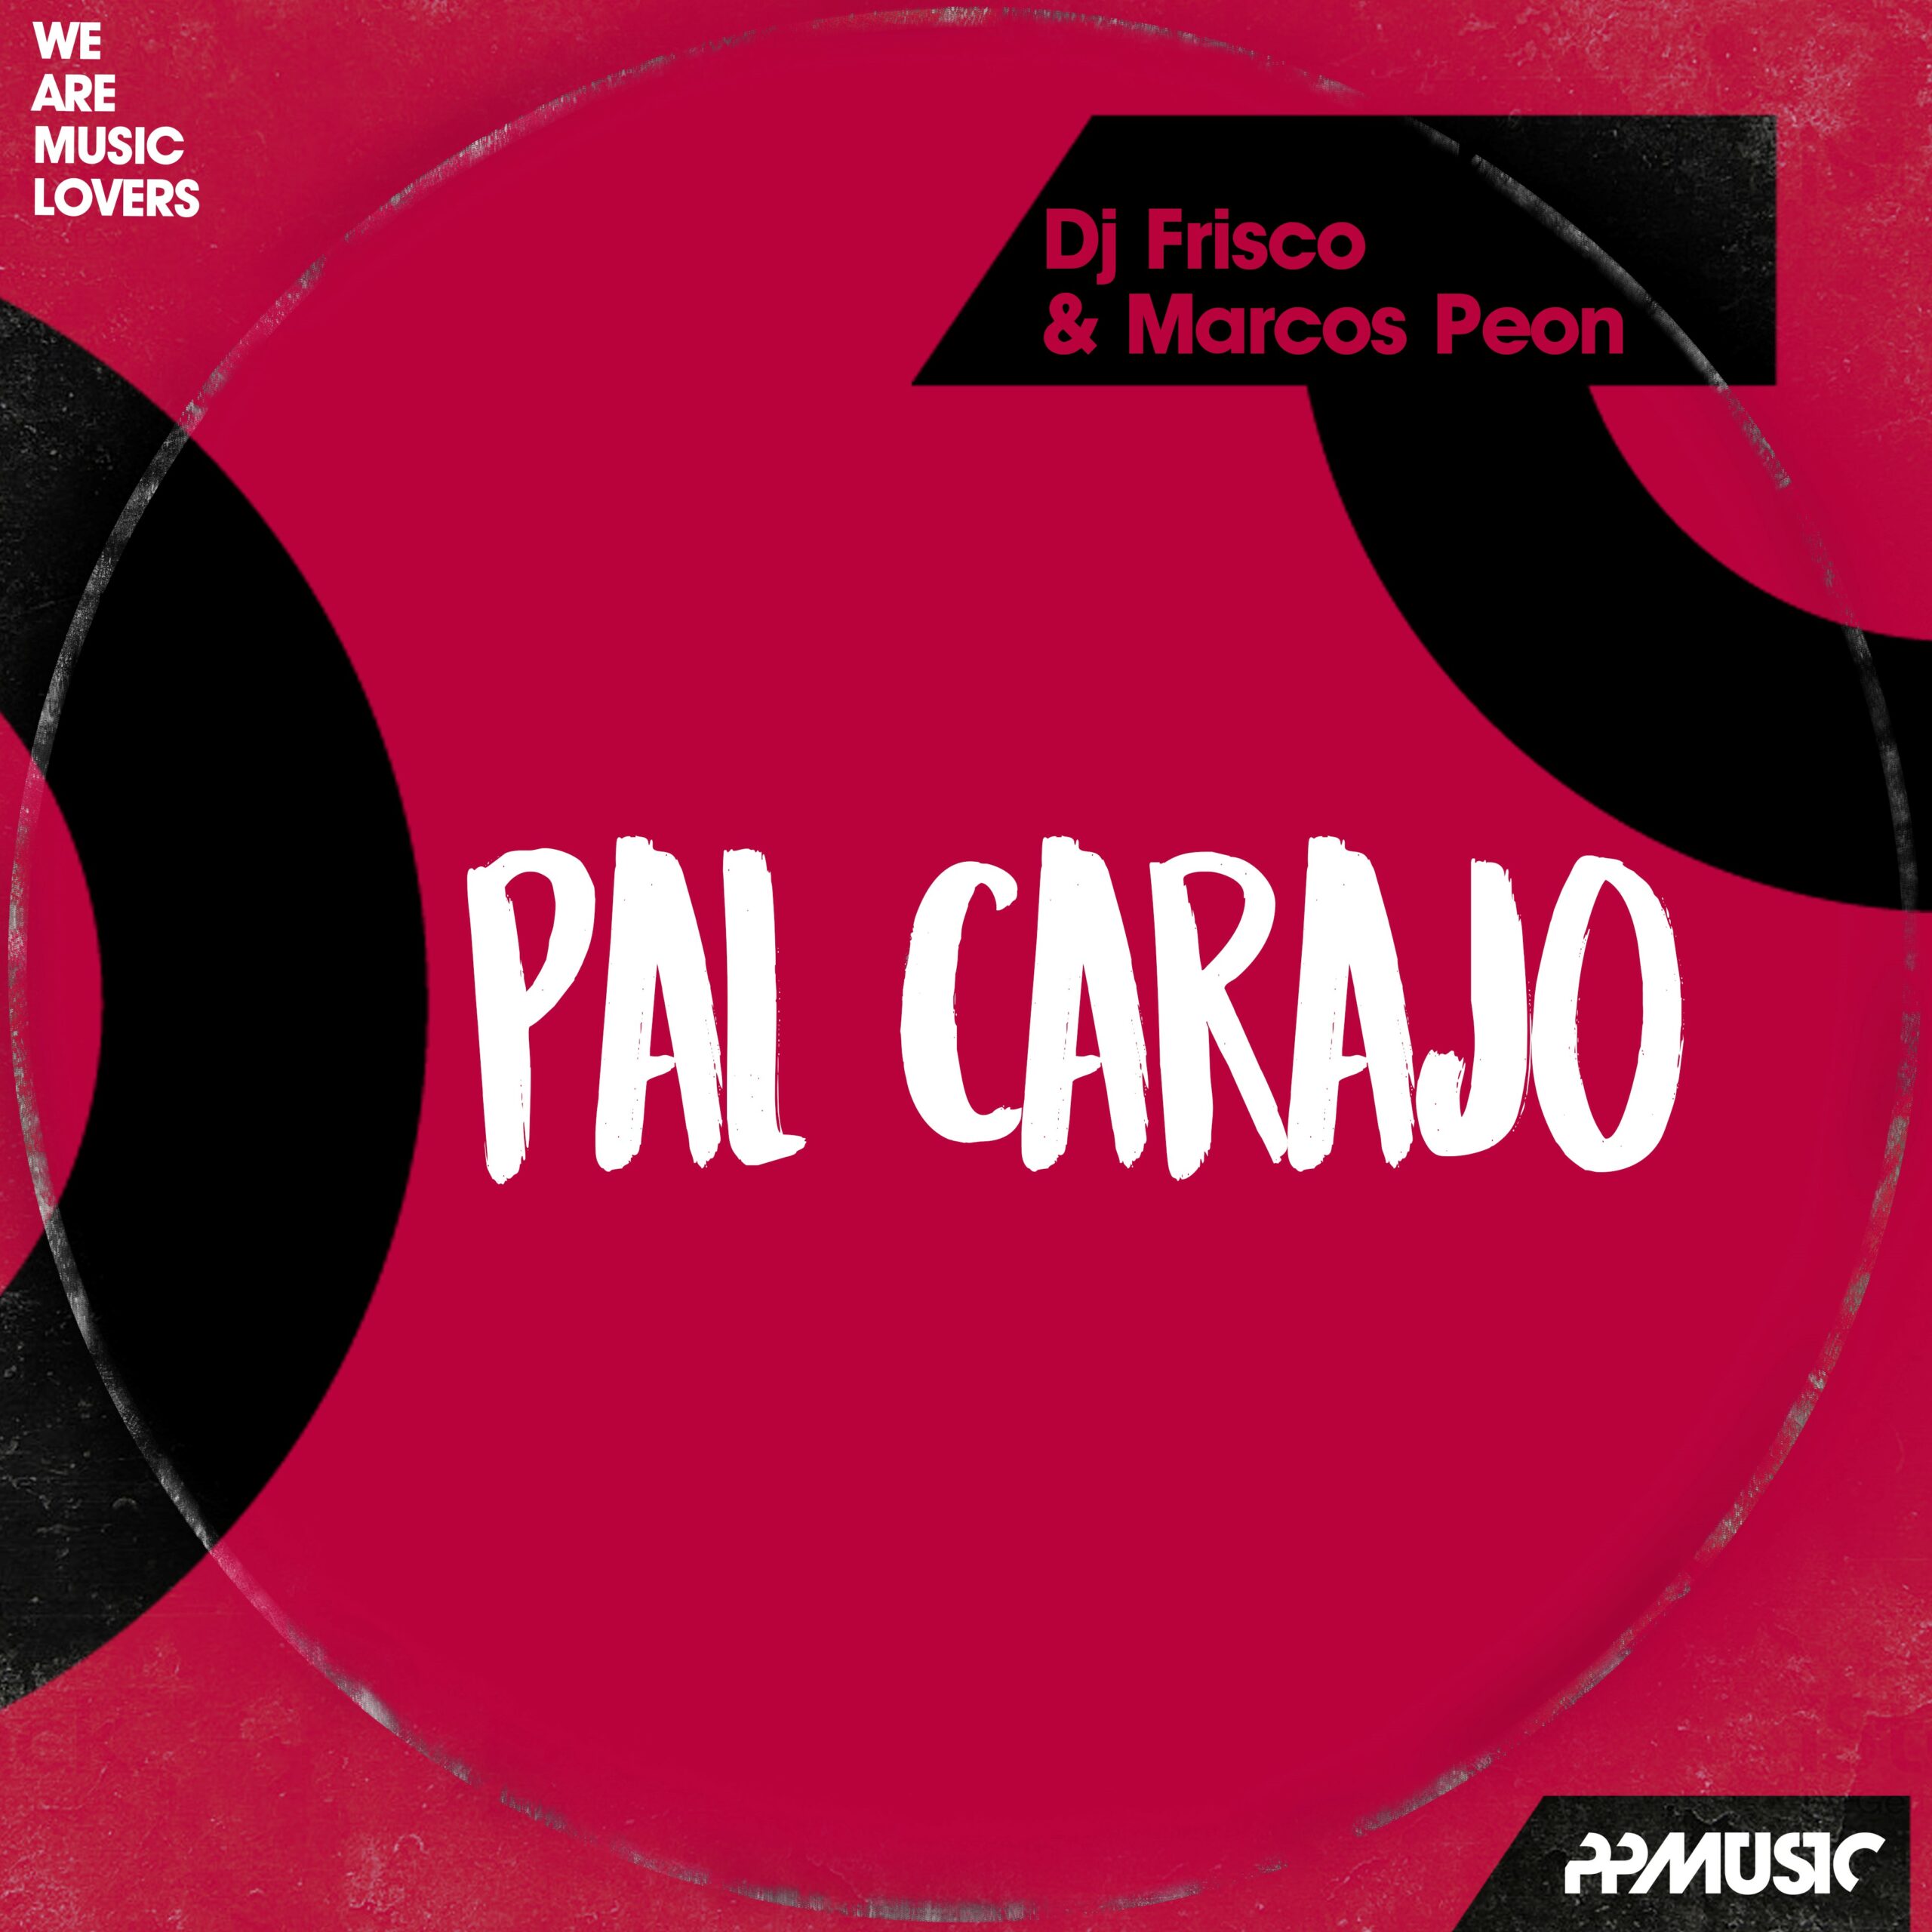 House bailable en el nuevo single de Dj Frisco & Marcos Peón